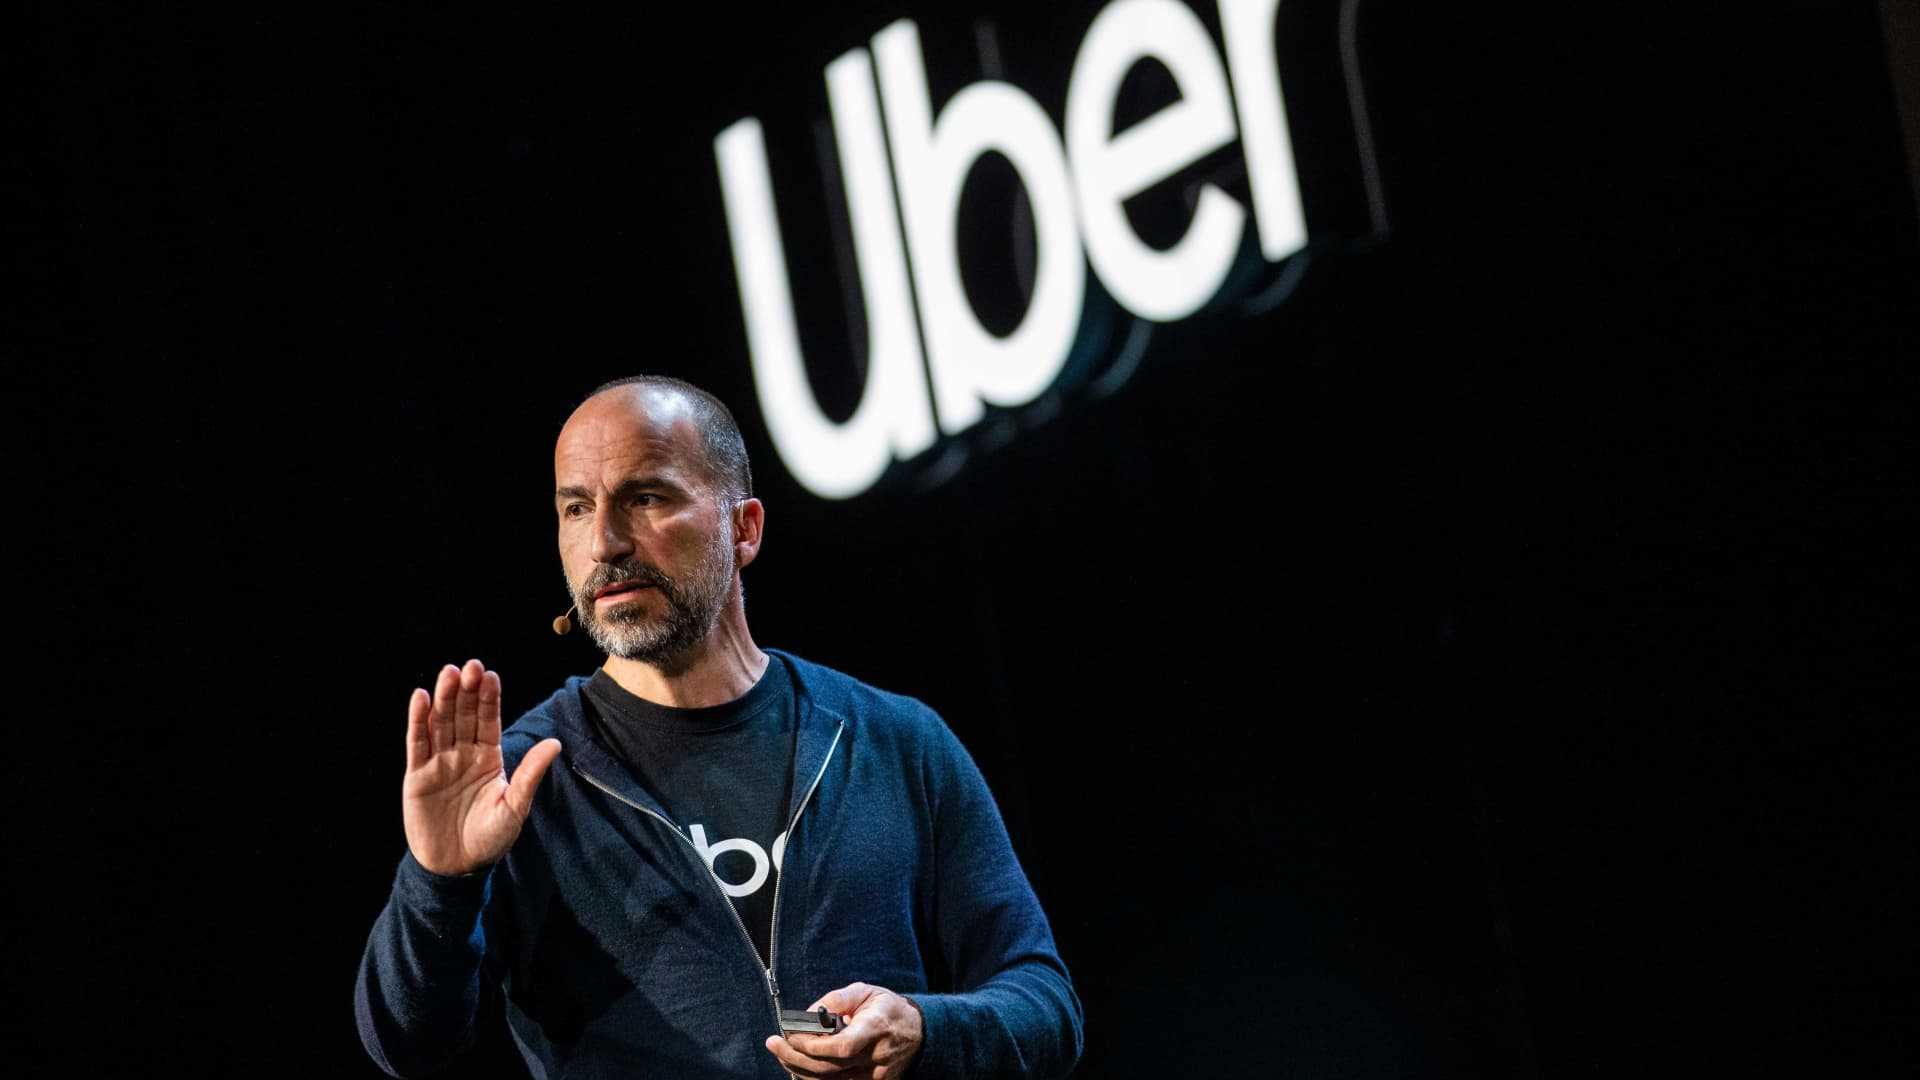 Uber per tagliare i costi, considerare le assunzioni come un "privilegio": email del CEO